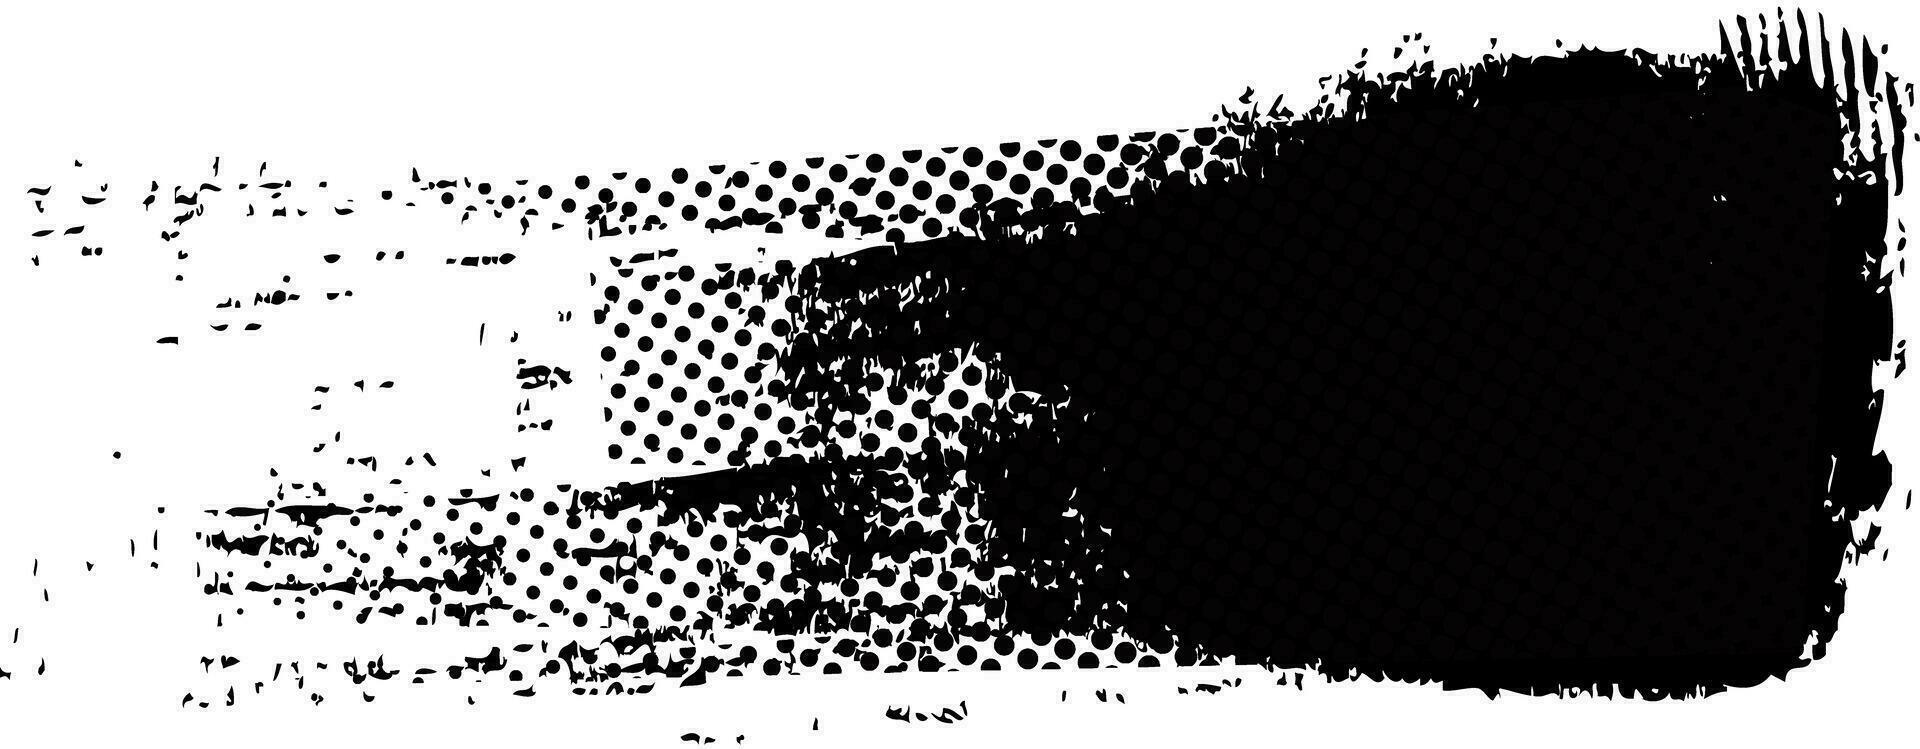 svart paintbrush stänkte, abstrakt grov. stänk bläck borsta stroke, grunge stil, halvton grafisk textur. vektor stroke illustration